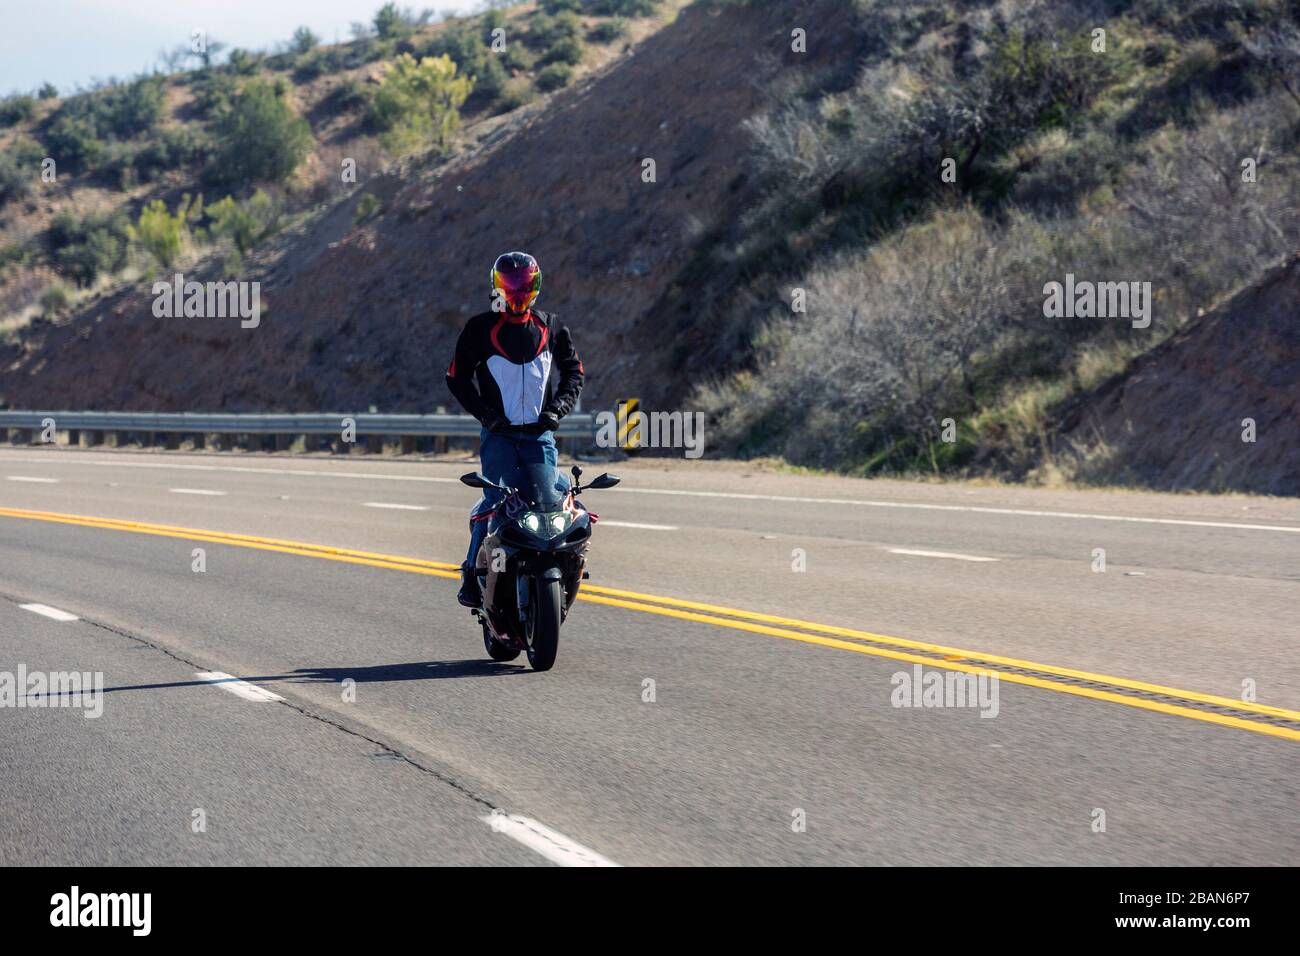 Moto pilote sur une route de montagne debout sur sa moto Photo Stock - Alamy